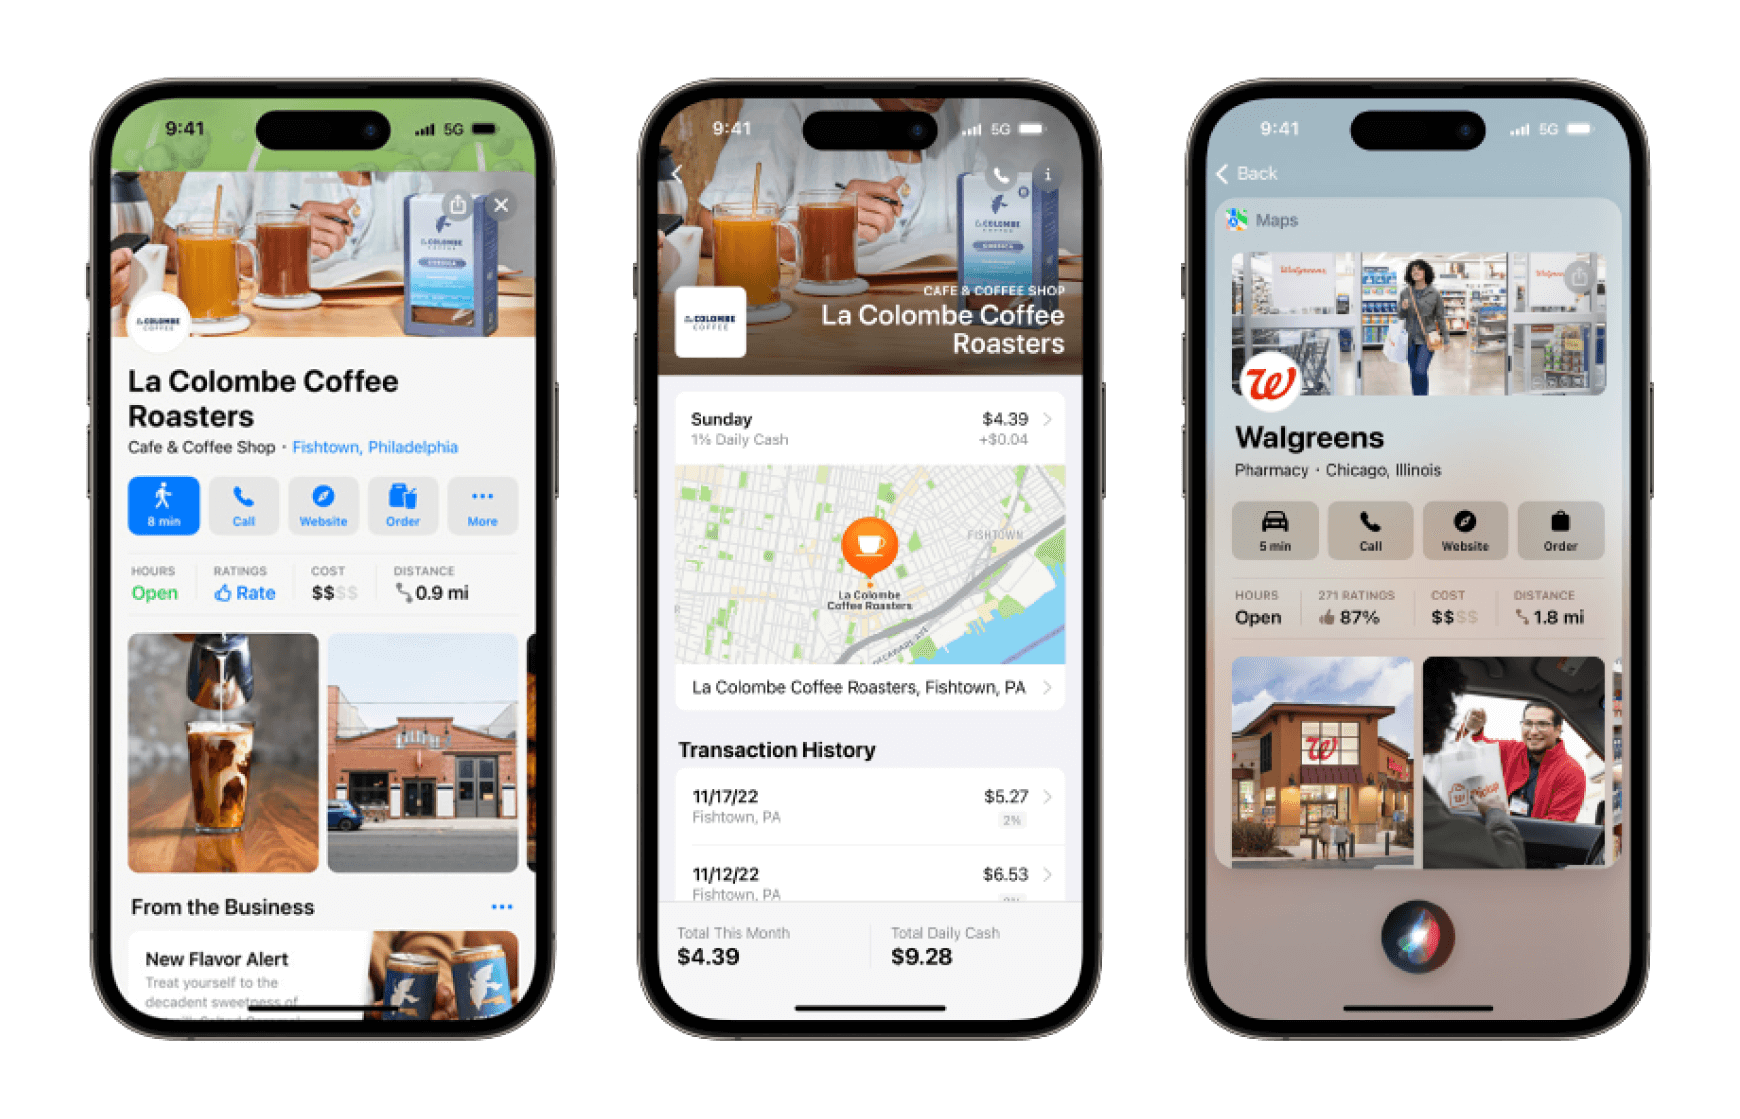 通过 Business Connect，企业可以向顾客展示优惠或促销信息，用户可还以在地图 app 地点卡中直接执行的多种操作